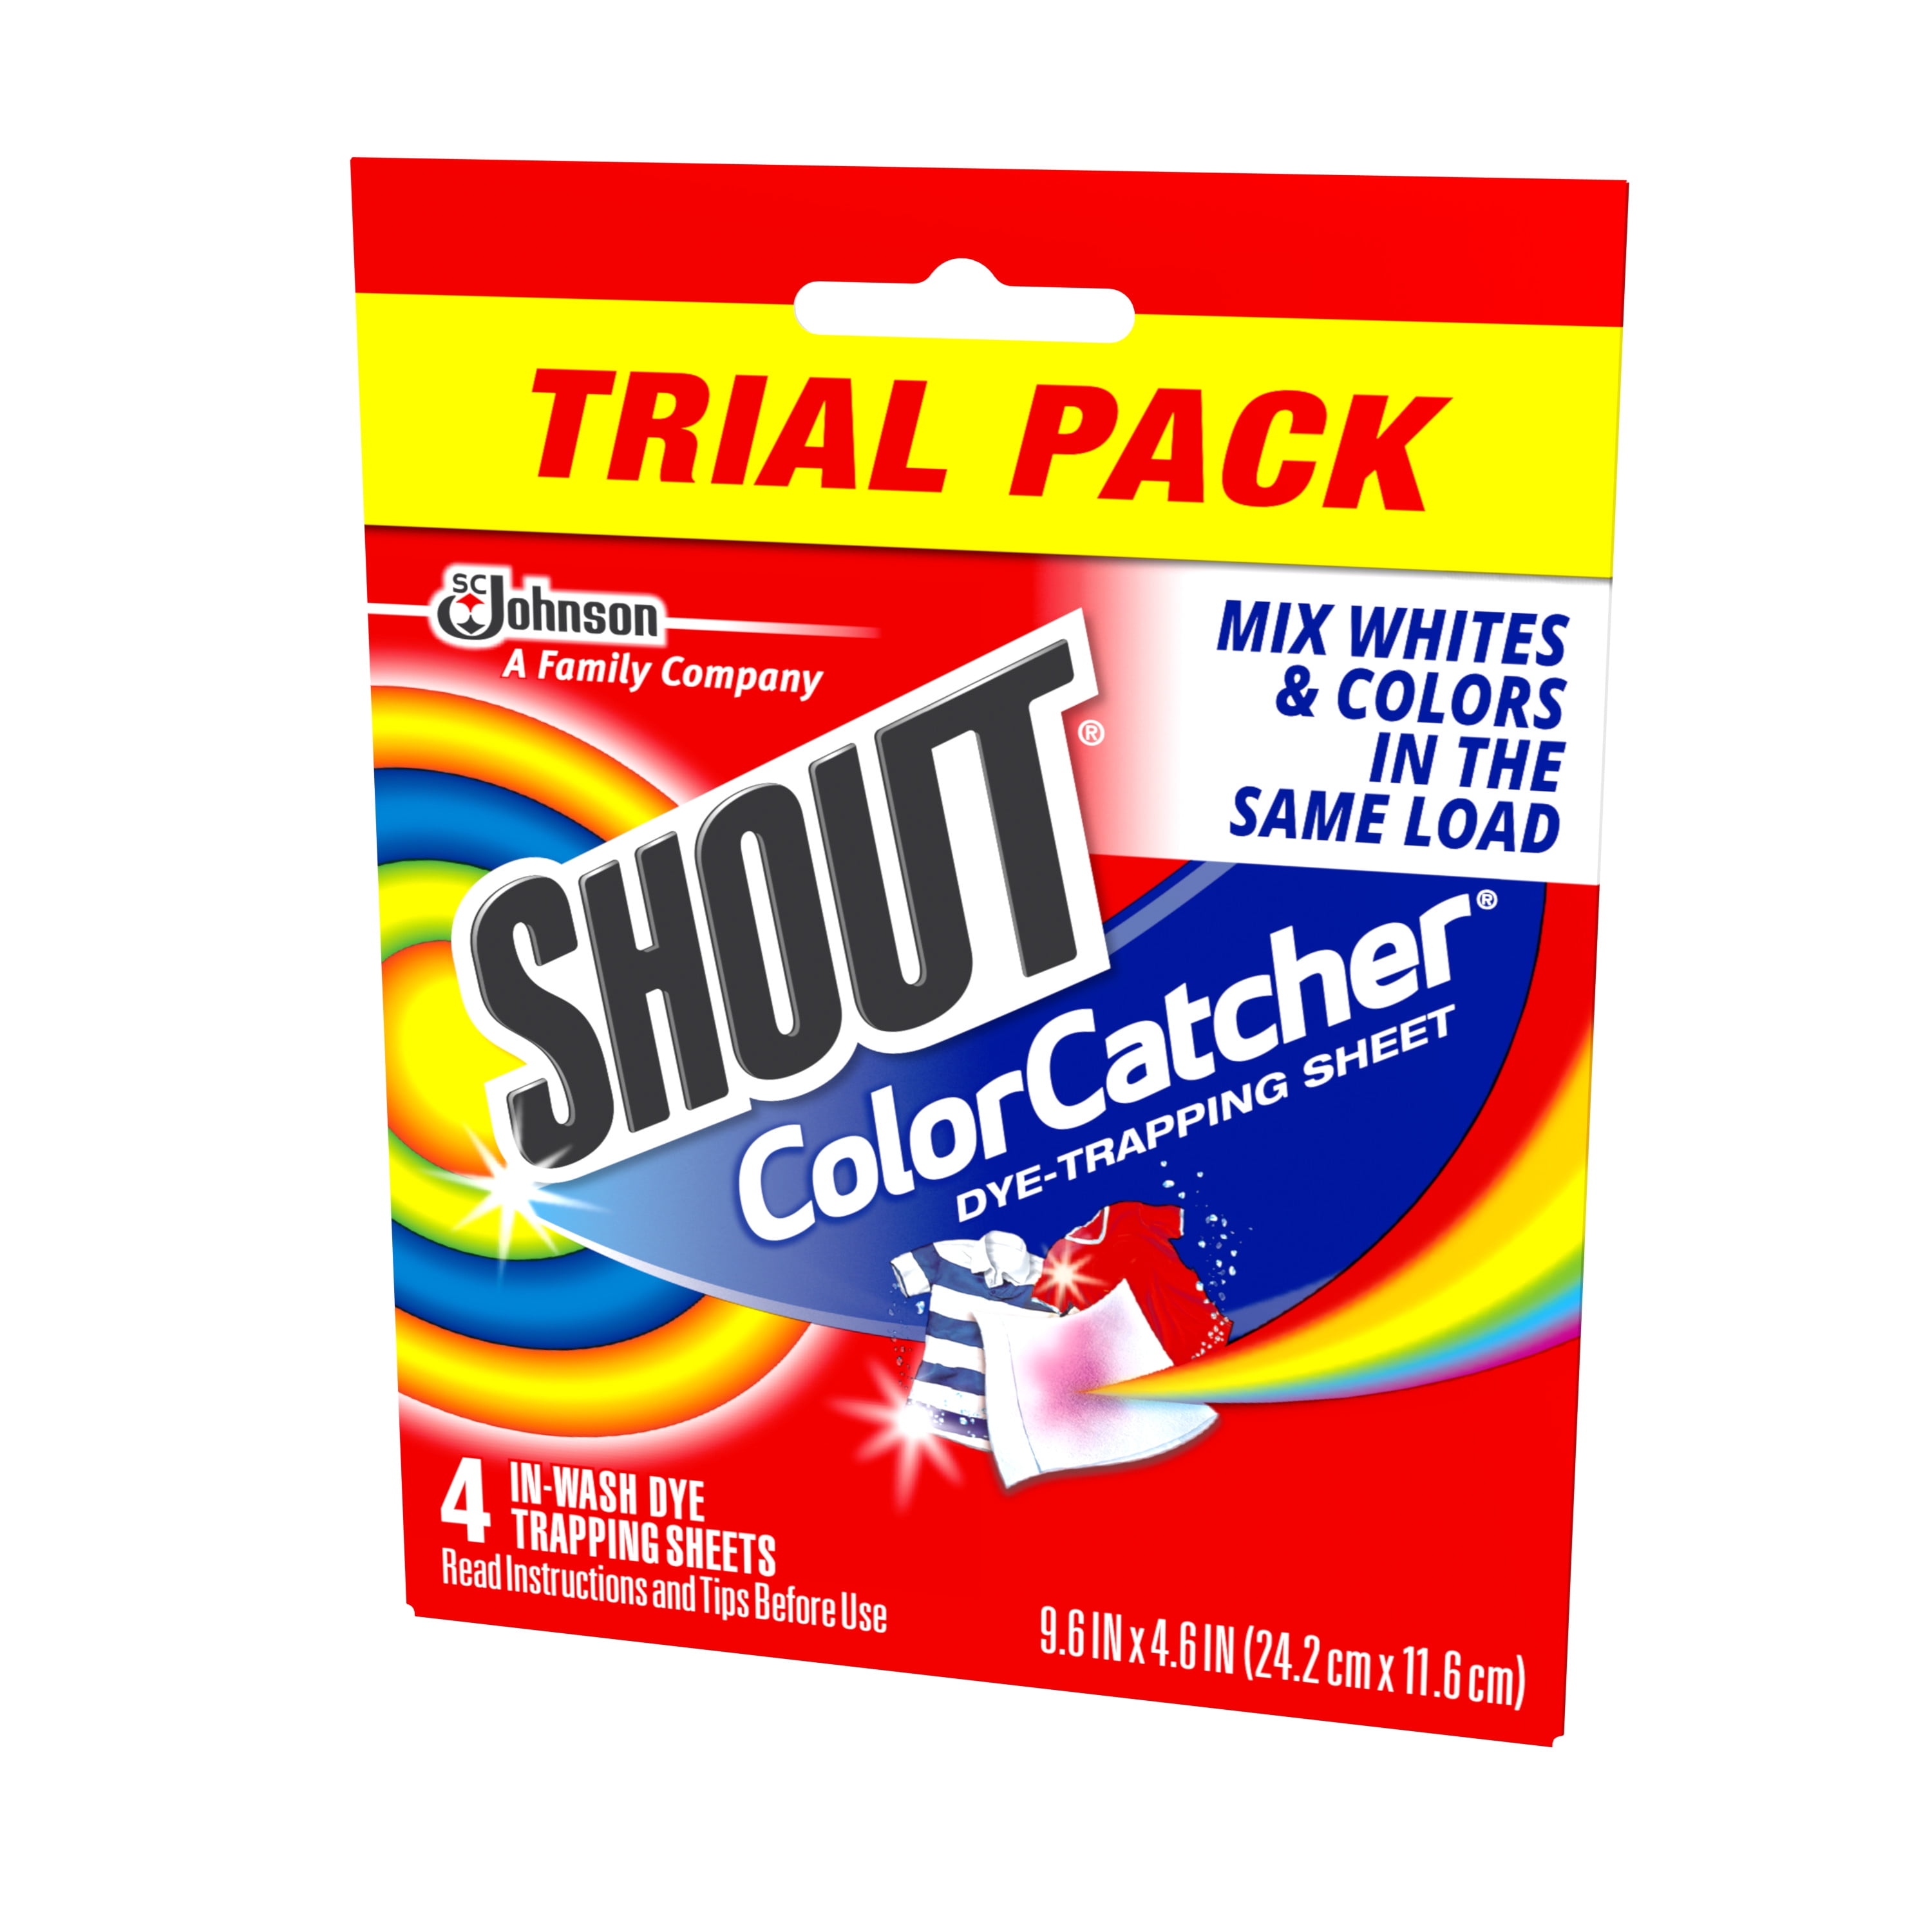 Shout Color Catchers